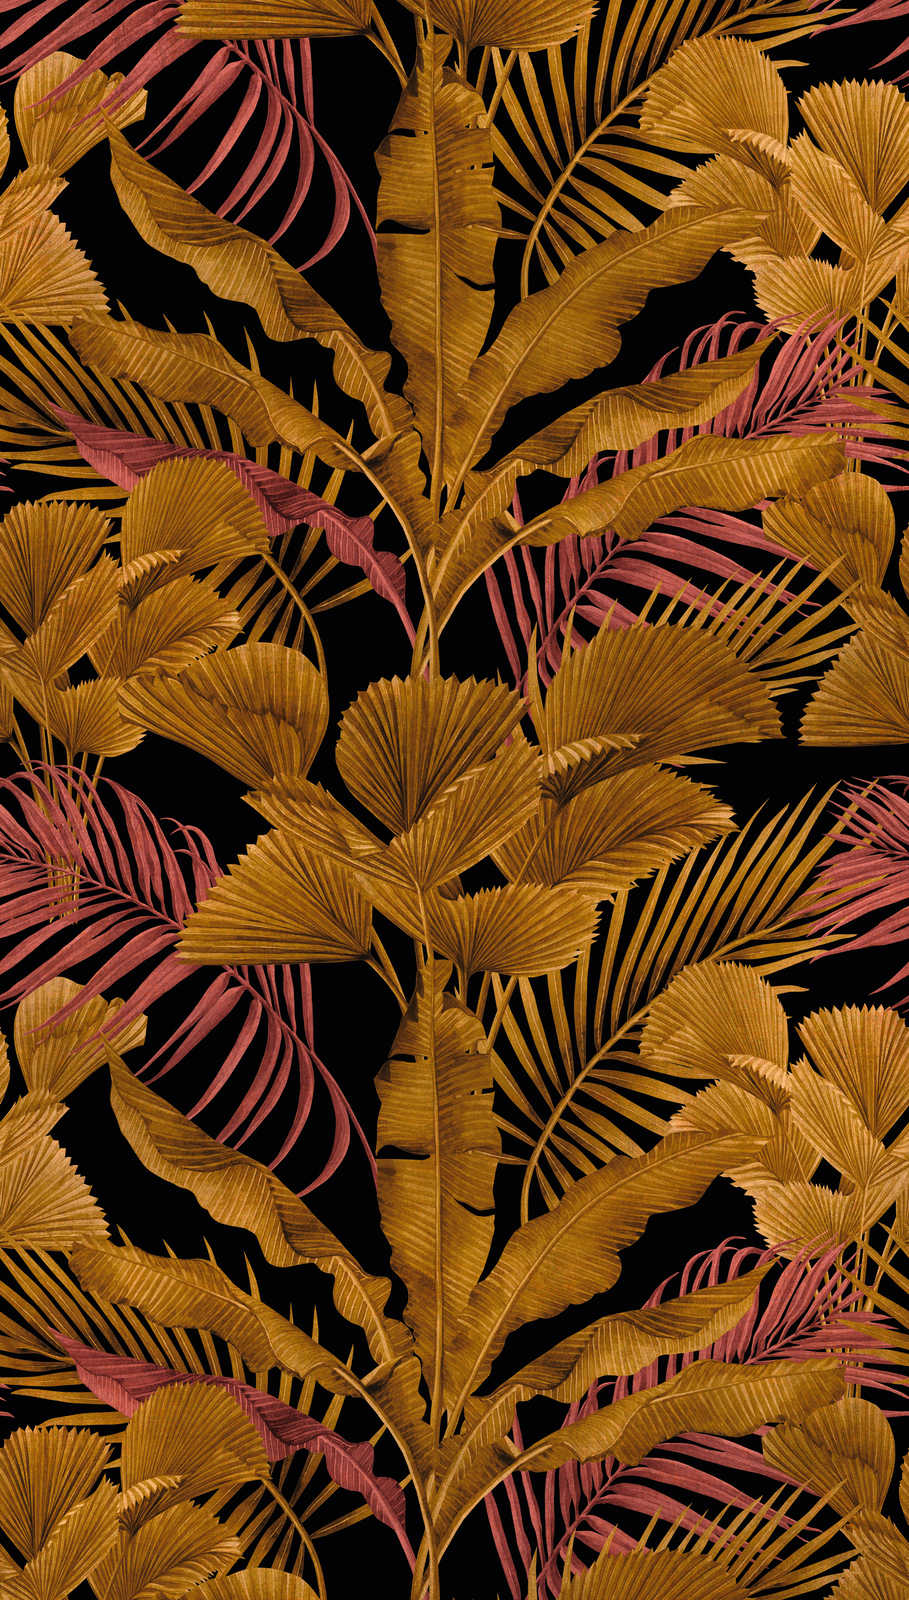             Vliesbehang met verschillende jungle bladeren - zwart, goud, roze
        